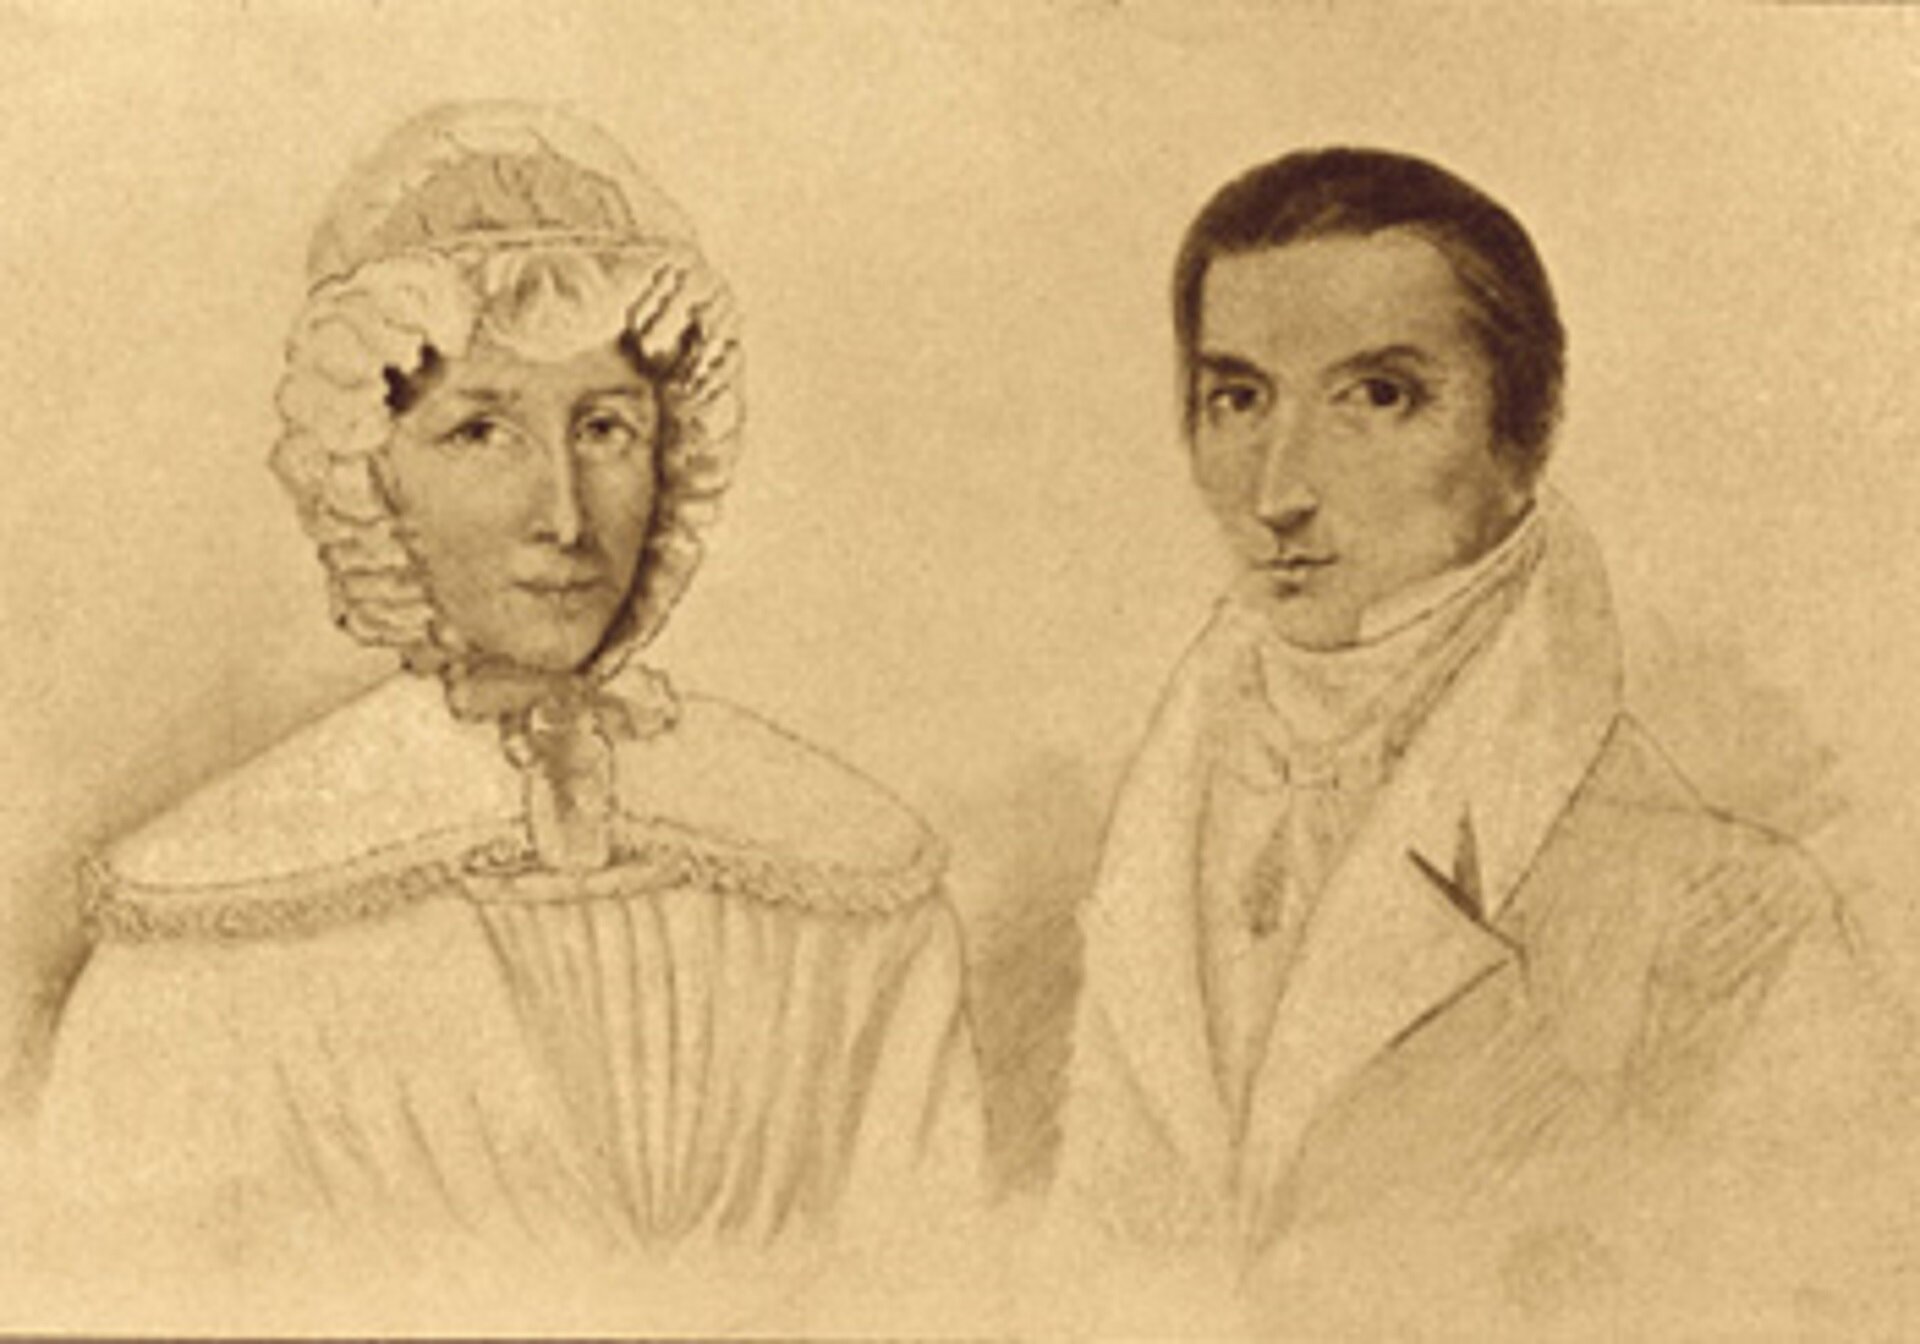 Na portrecie widoczni są rodzice Fryderyka Chopina - Justyna i Mikołaj Chopinowie. Kobieta po lewej stronie ma poważną twarz. Ubrana jest w sukienkę, na głowie założony ma czepiec z falbaną, który wiązany jest pod szyją. Mężczyzna również z poważna miną, włosy w kolorze brązowym zaczesane do tyłu. Ubrany jest w koszulę, żabot i marynarkę.